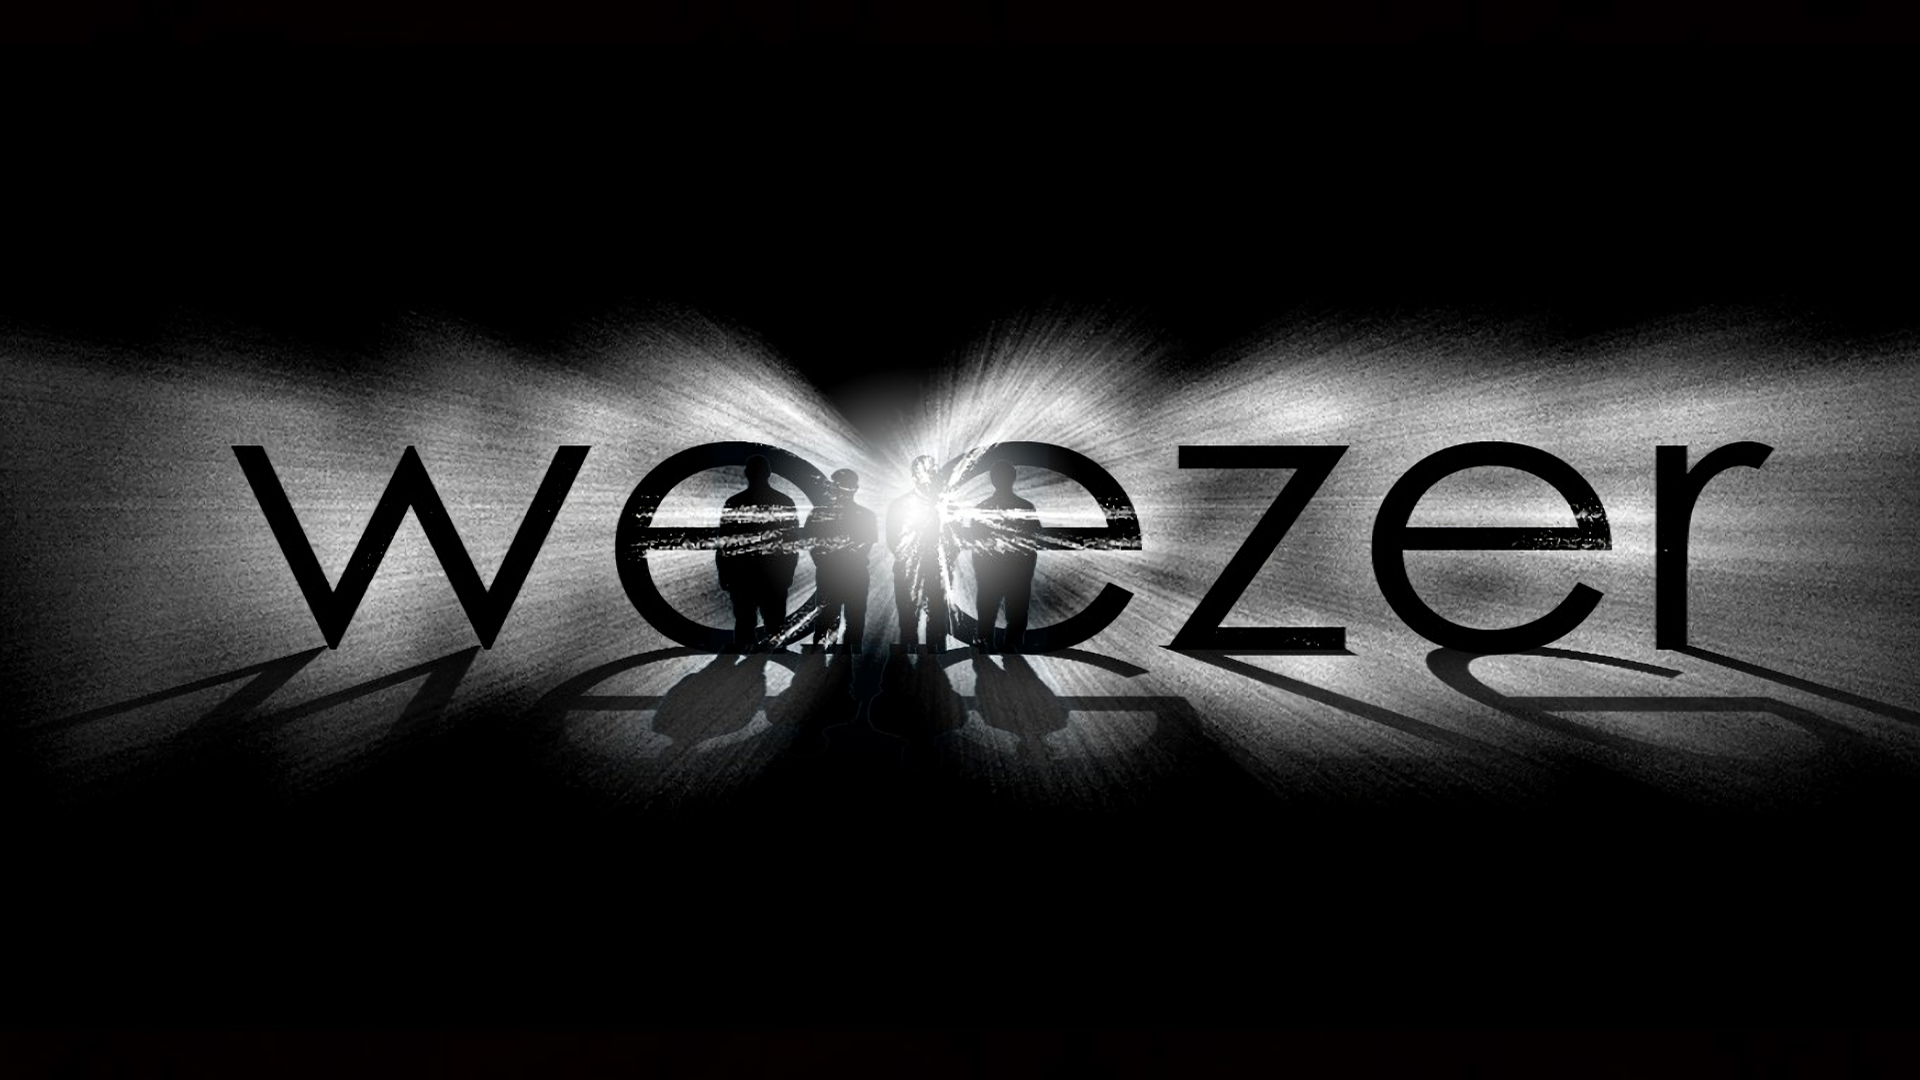 Gorillaz Weezer wallpaper by IndieIris  Download on ZEDGE  d6b8